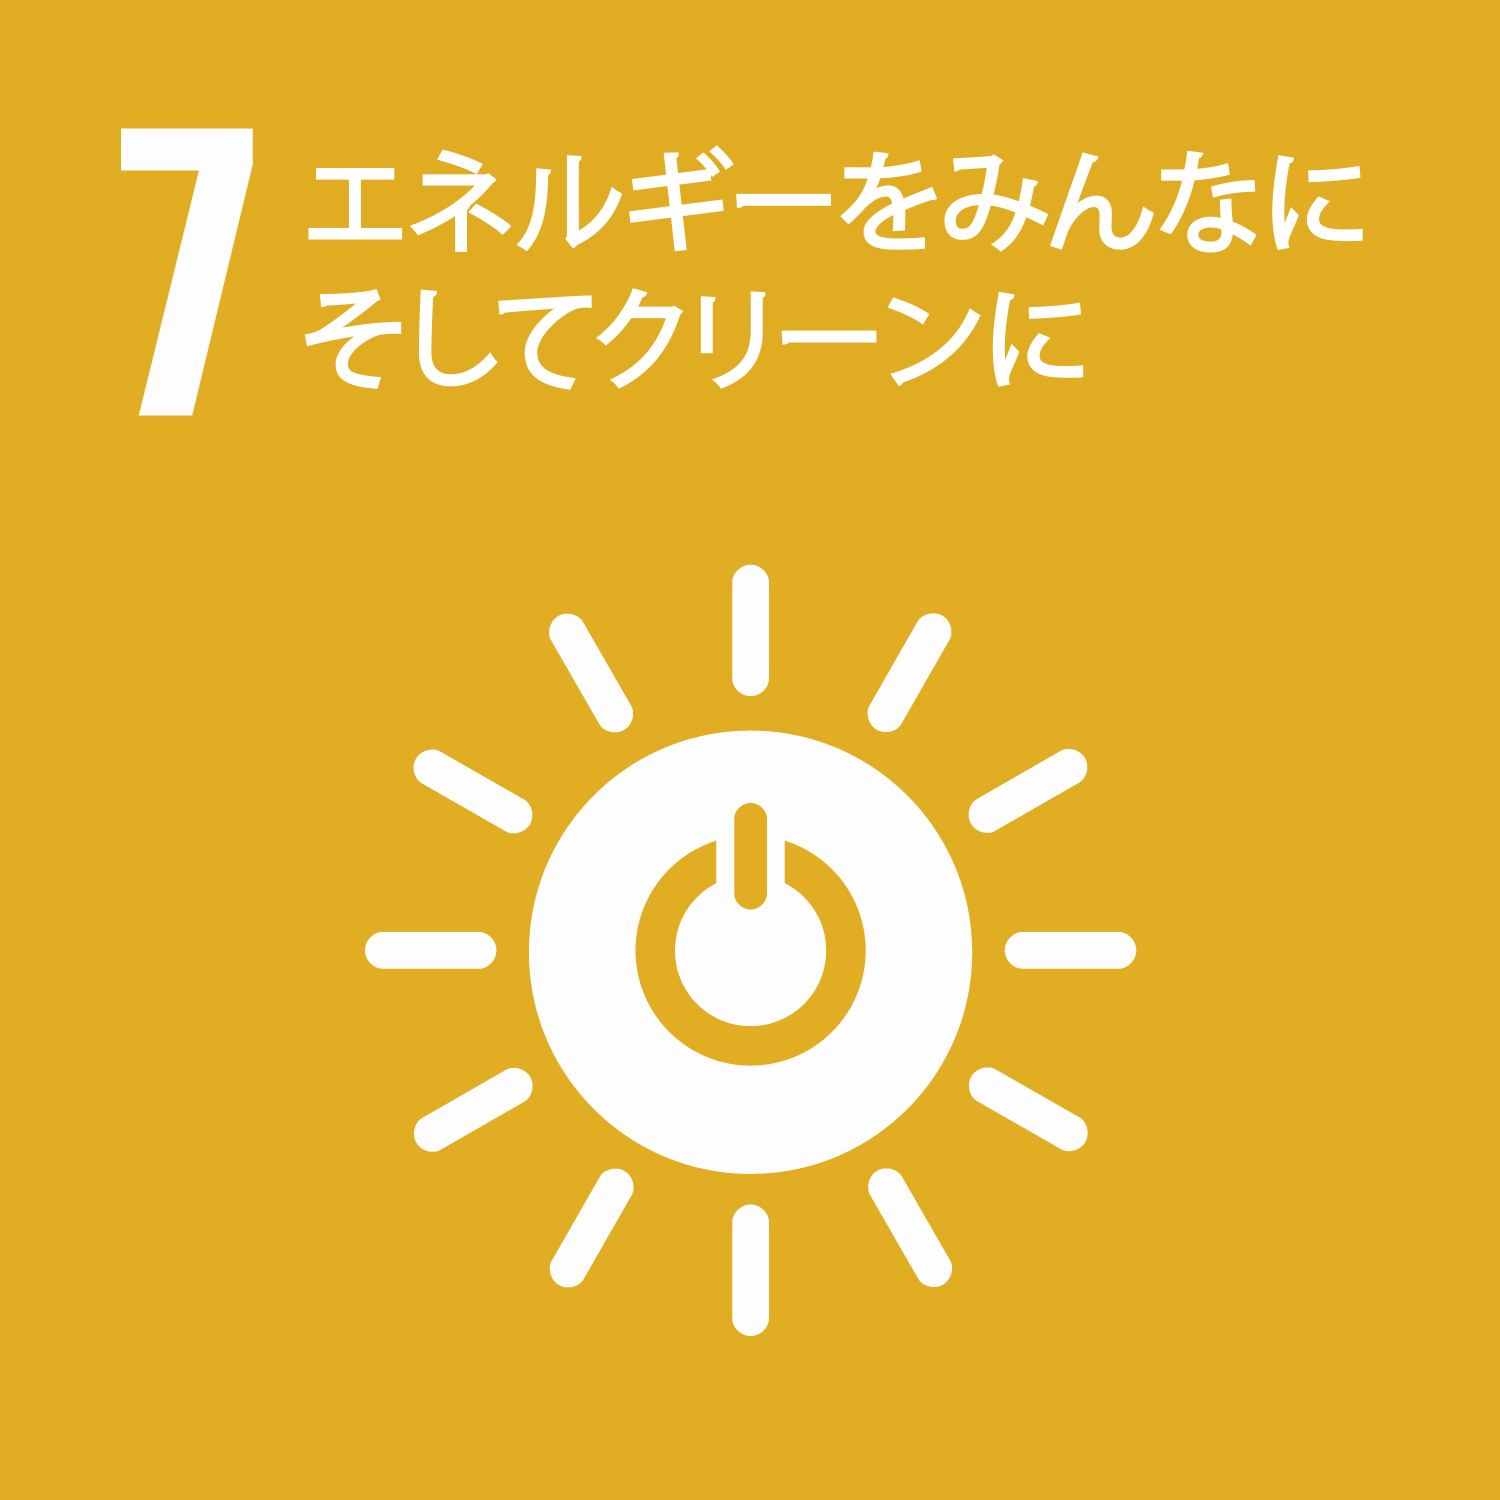 SDGs その7：エネルギーをみんなにそしてクリーンに